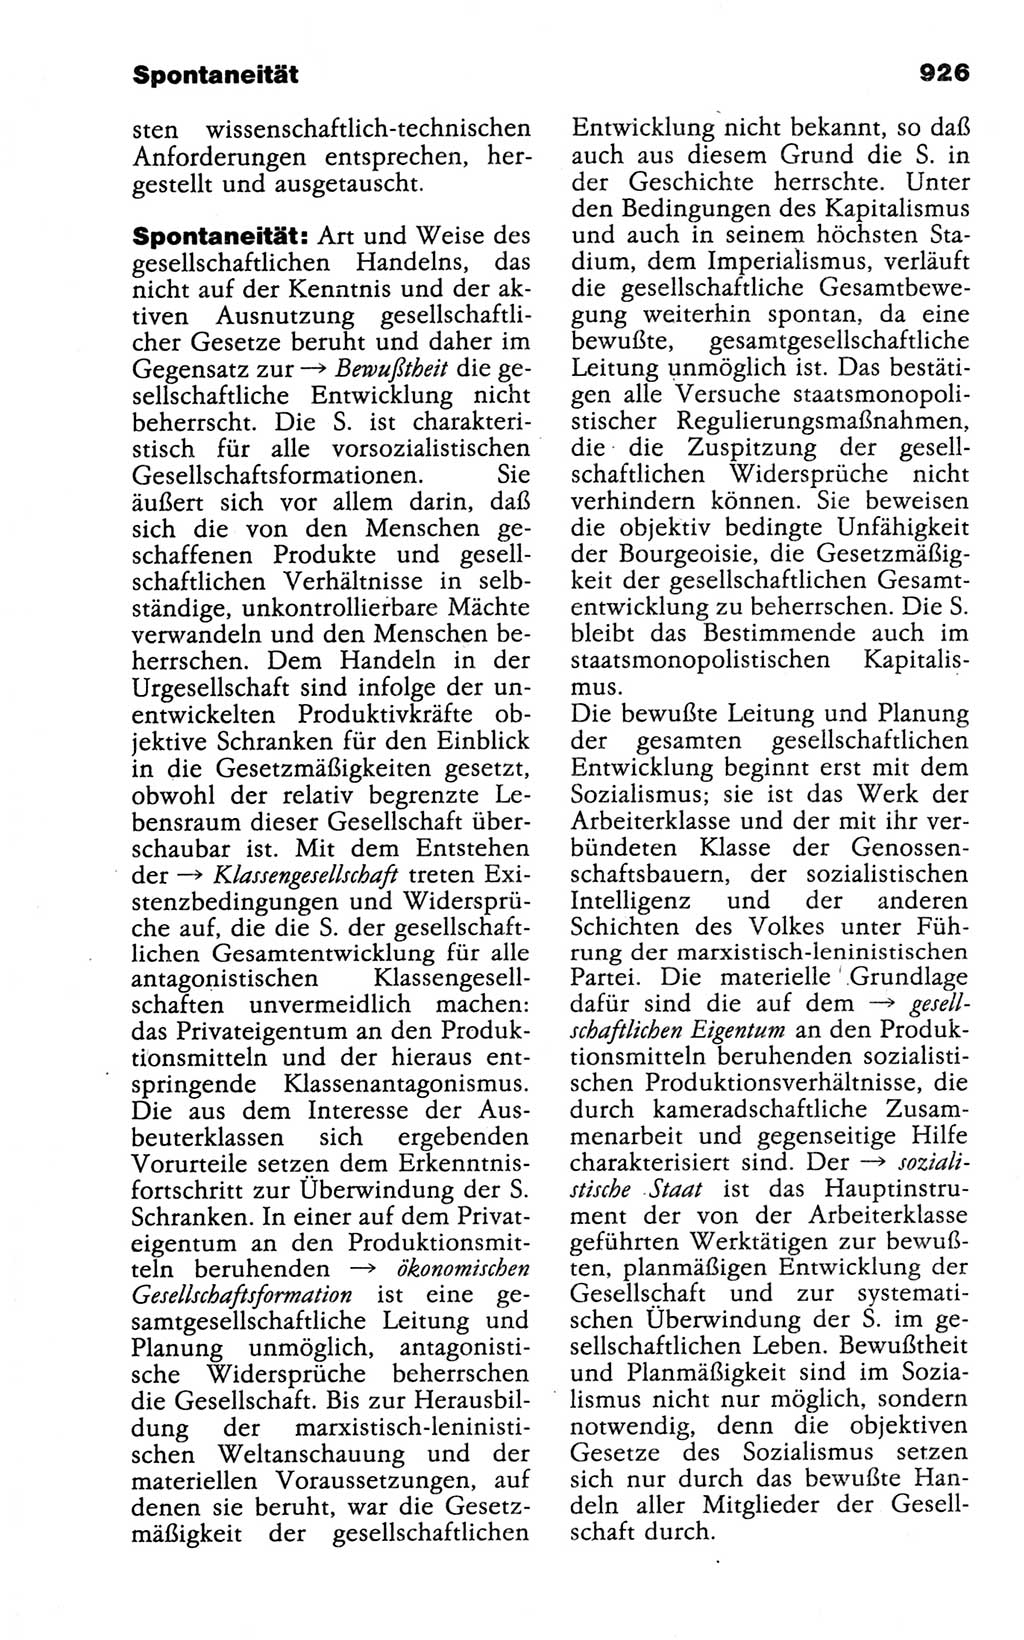 Kleines politisches Wörterbuch [Deutsche Demokratische Republik (DDR)] 1988, Seite 926 (Kl. pol. Wb. DDR 1988, S. 926)